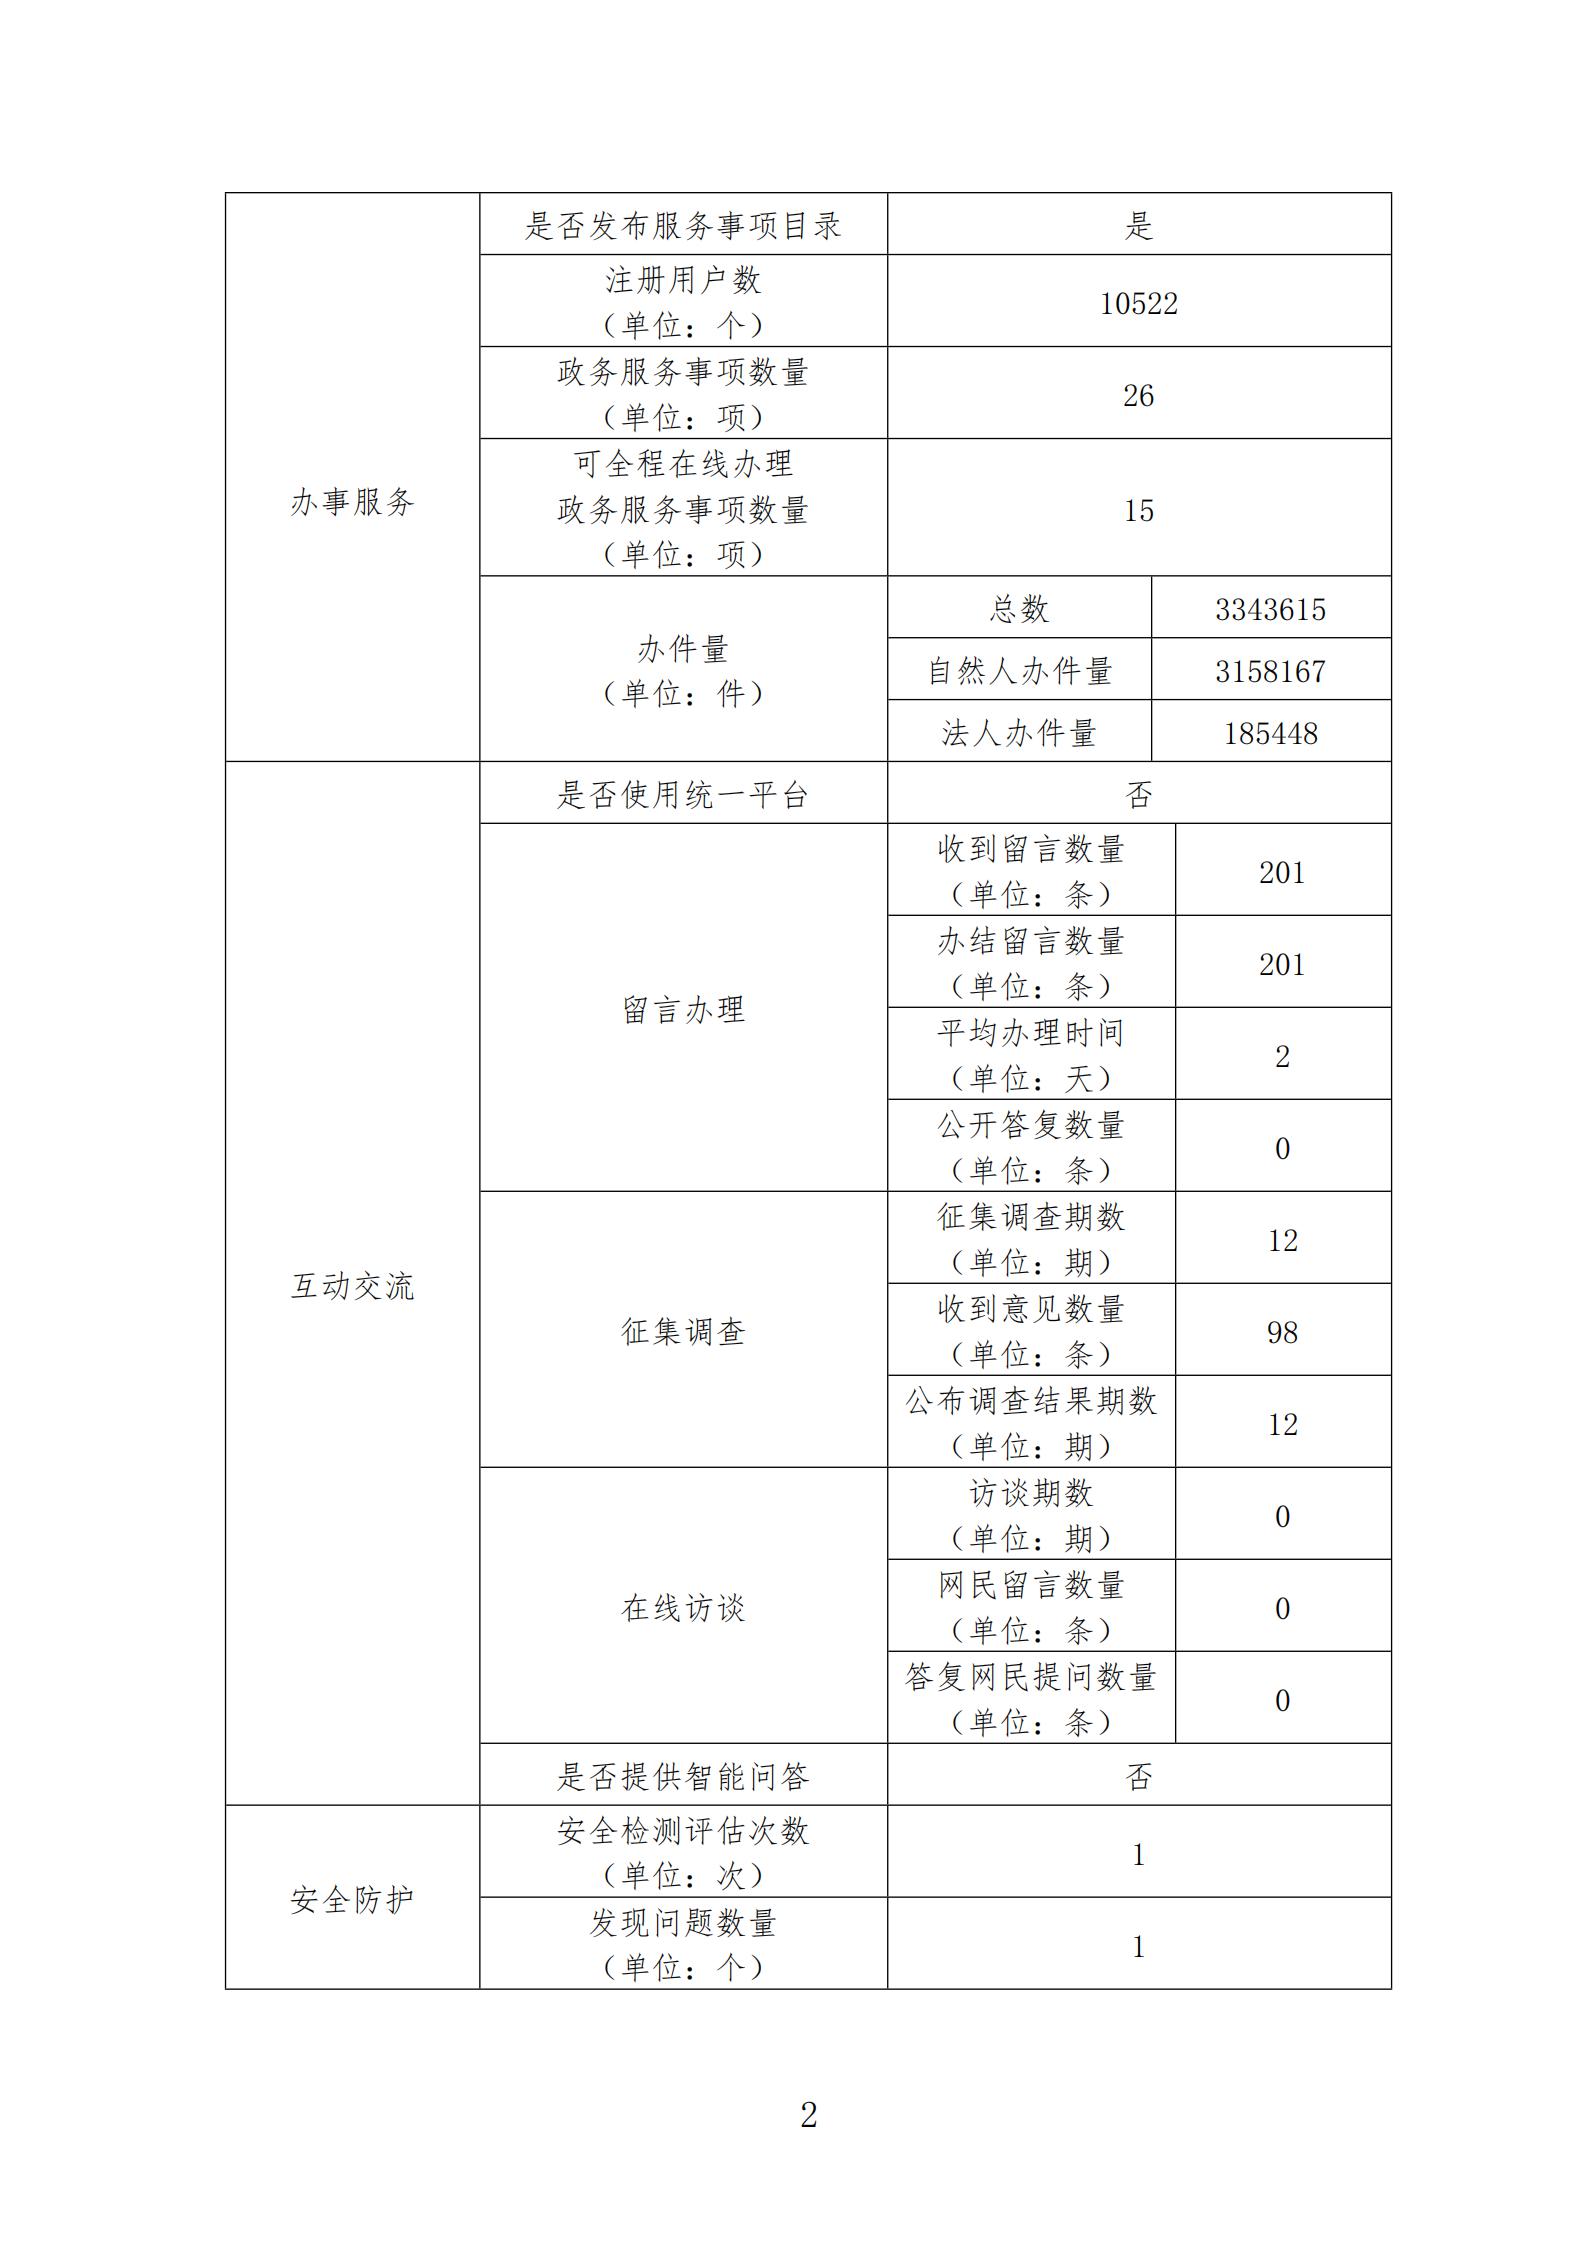 2020年云南省医疗保障局网站年度报表_01.jpg